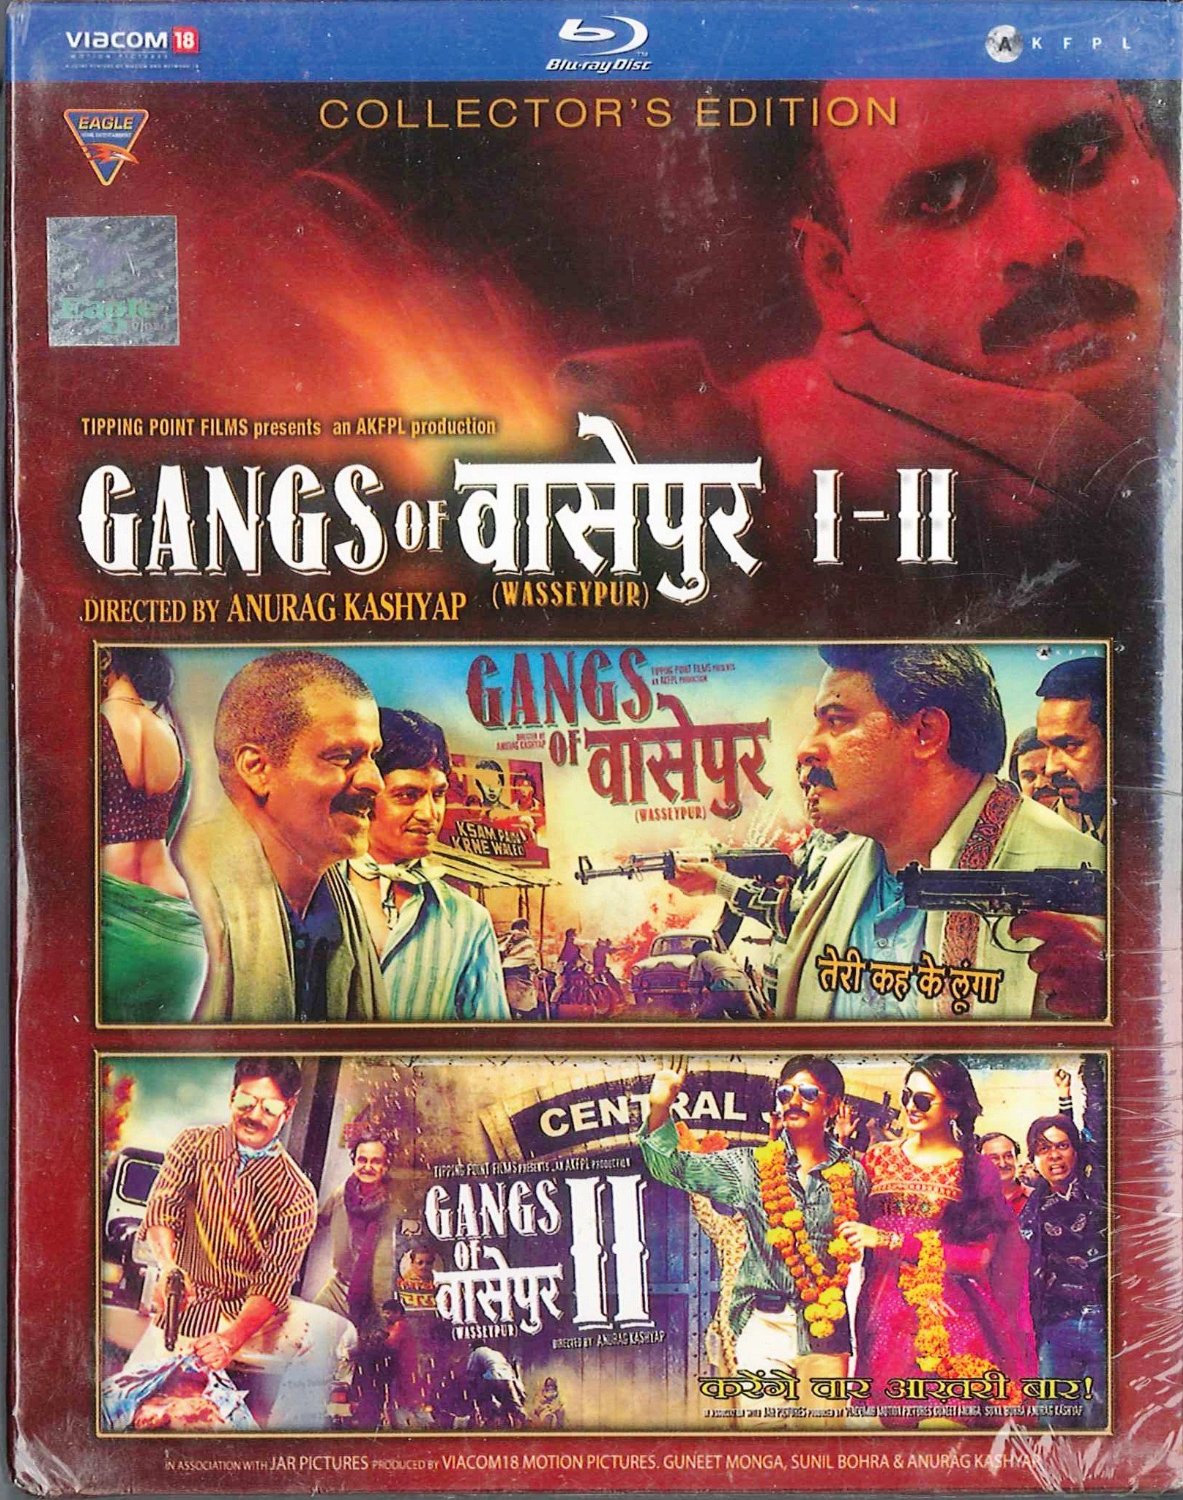 gangs of wasseypur 2 online